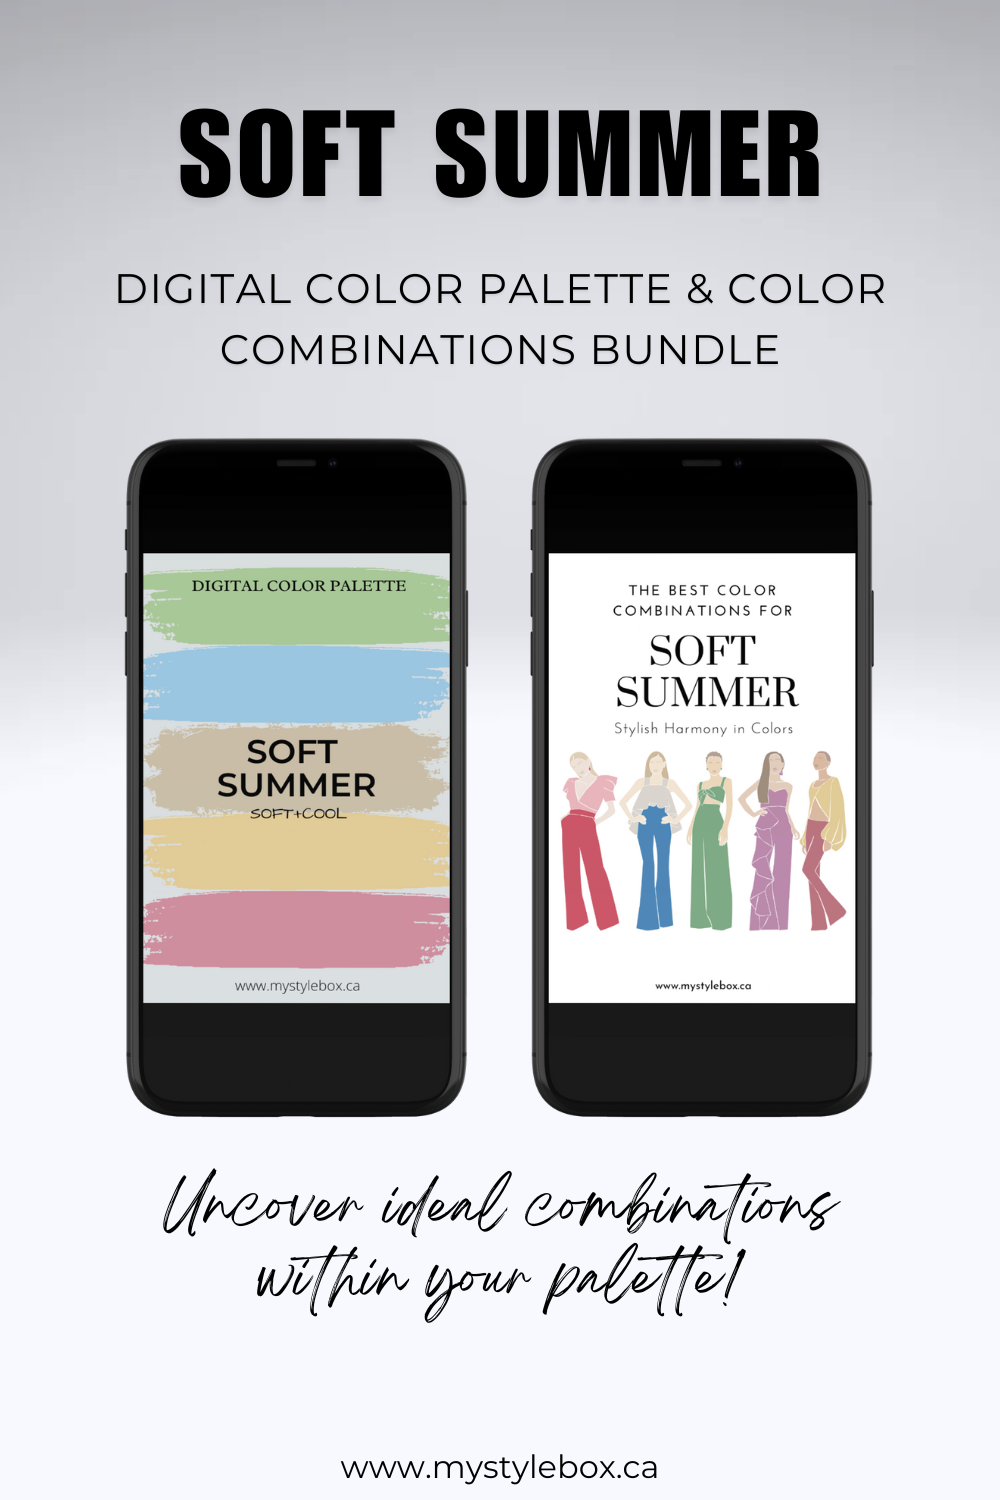 Soft Summer Season Digital Color Palette and Color Combinations Bundle